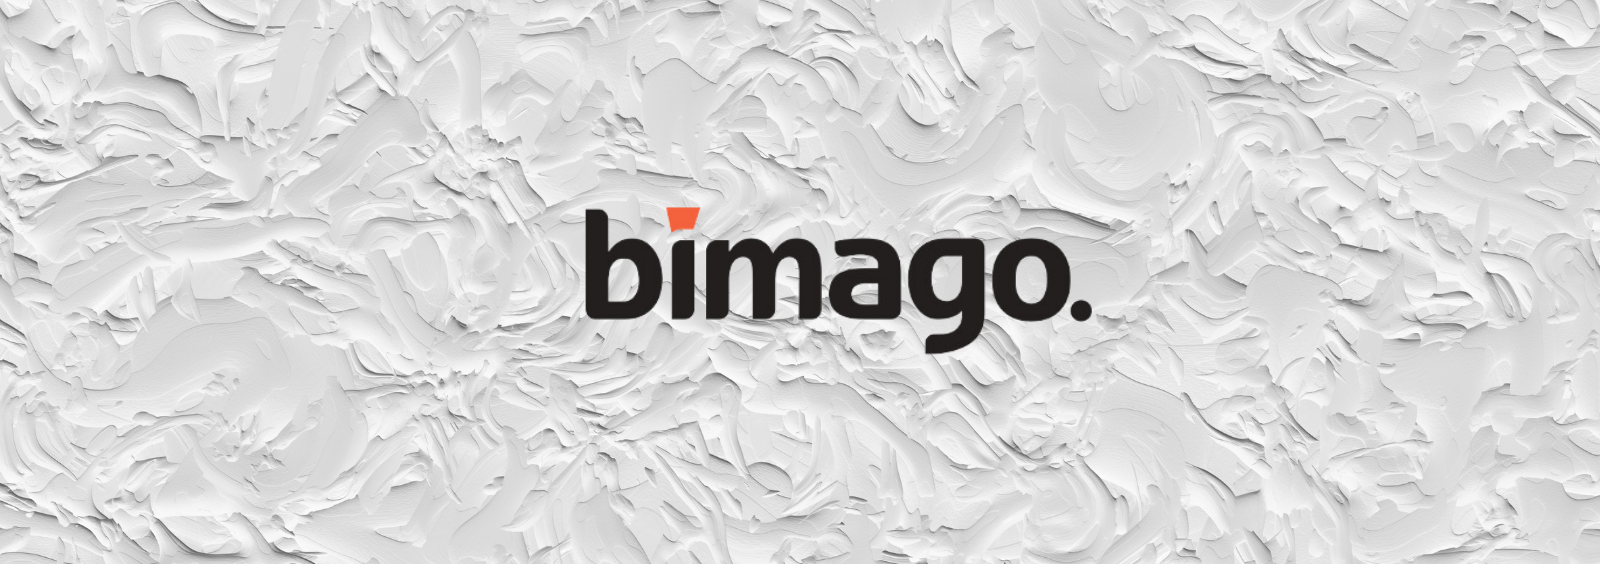 Bimago - 